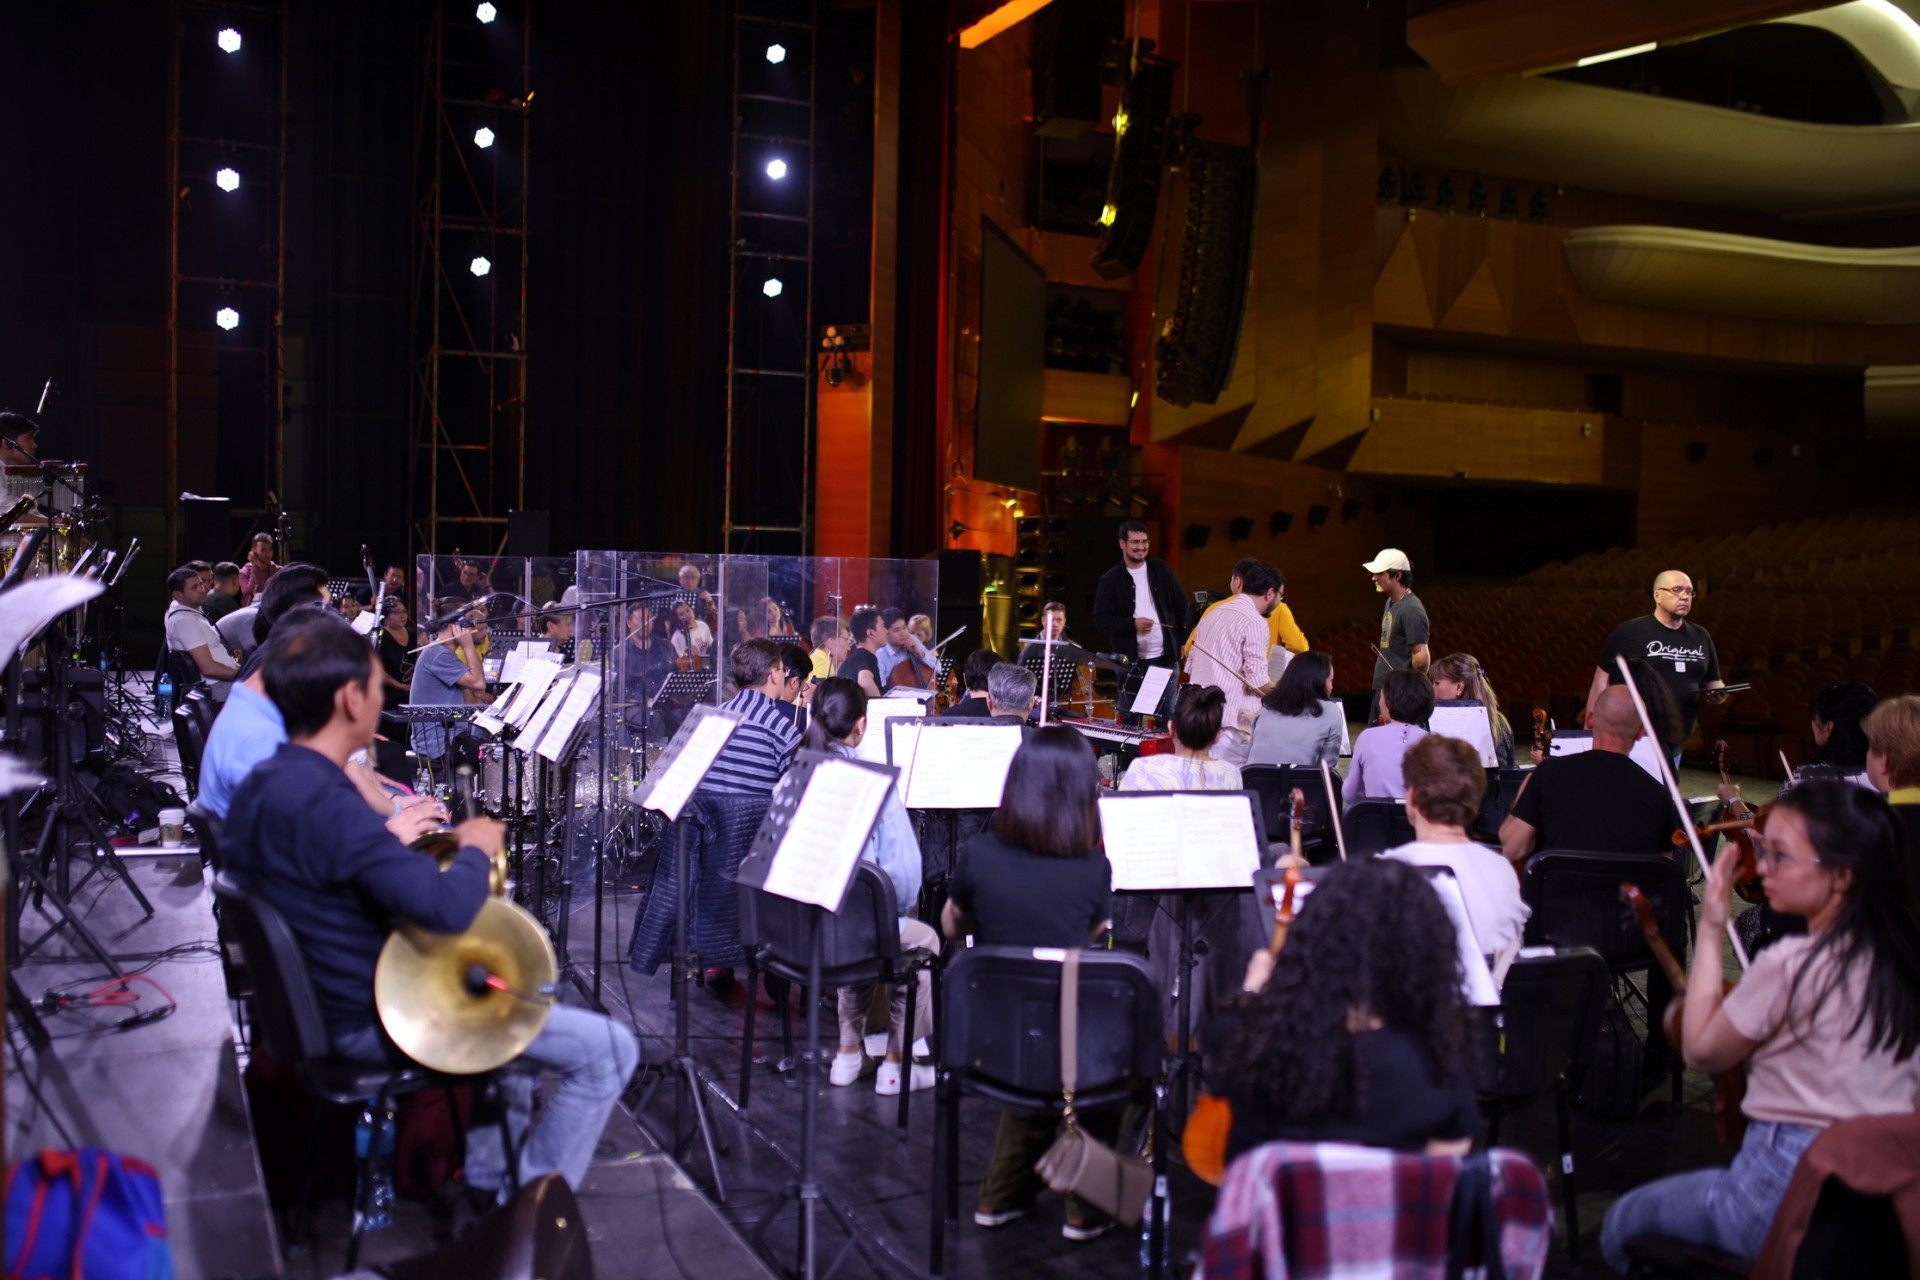 Концерт-посвящение Batyr. Gül Almaty:  смотрим атмосферные кадры с генеральной репетиции